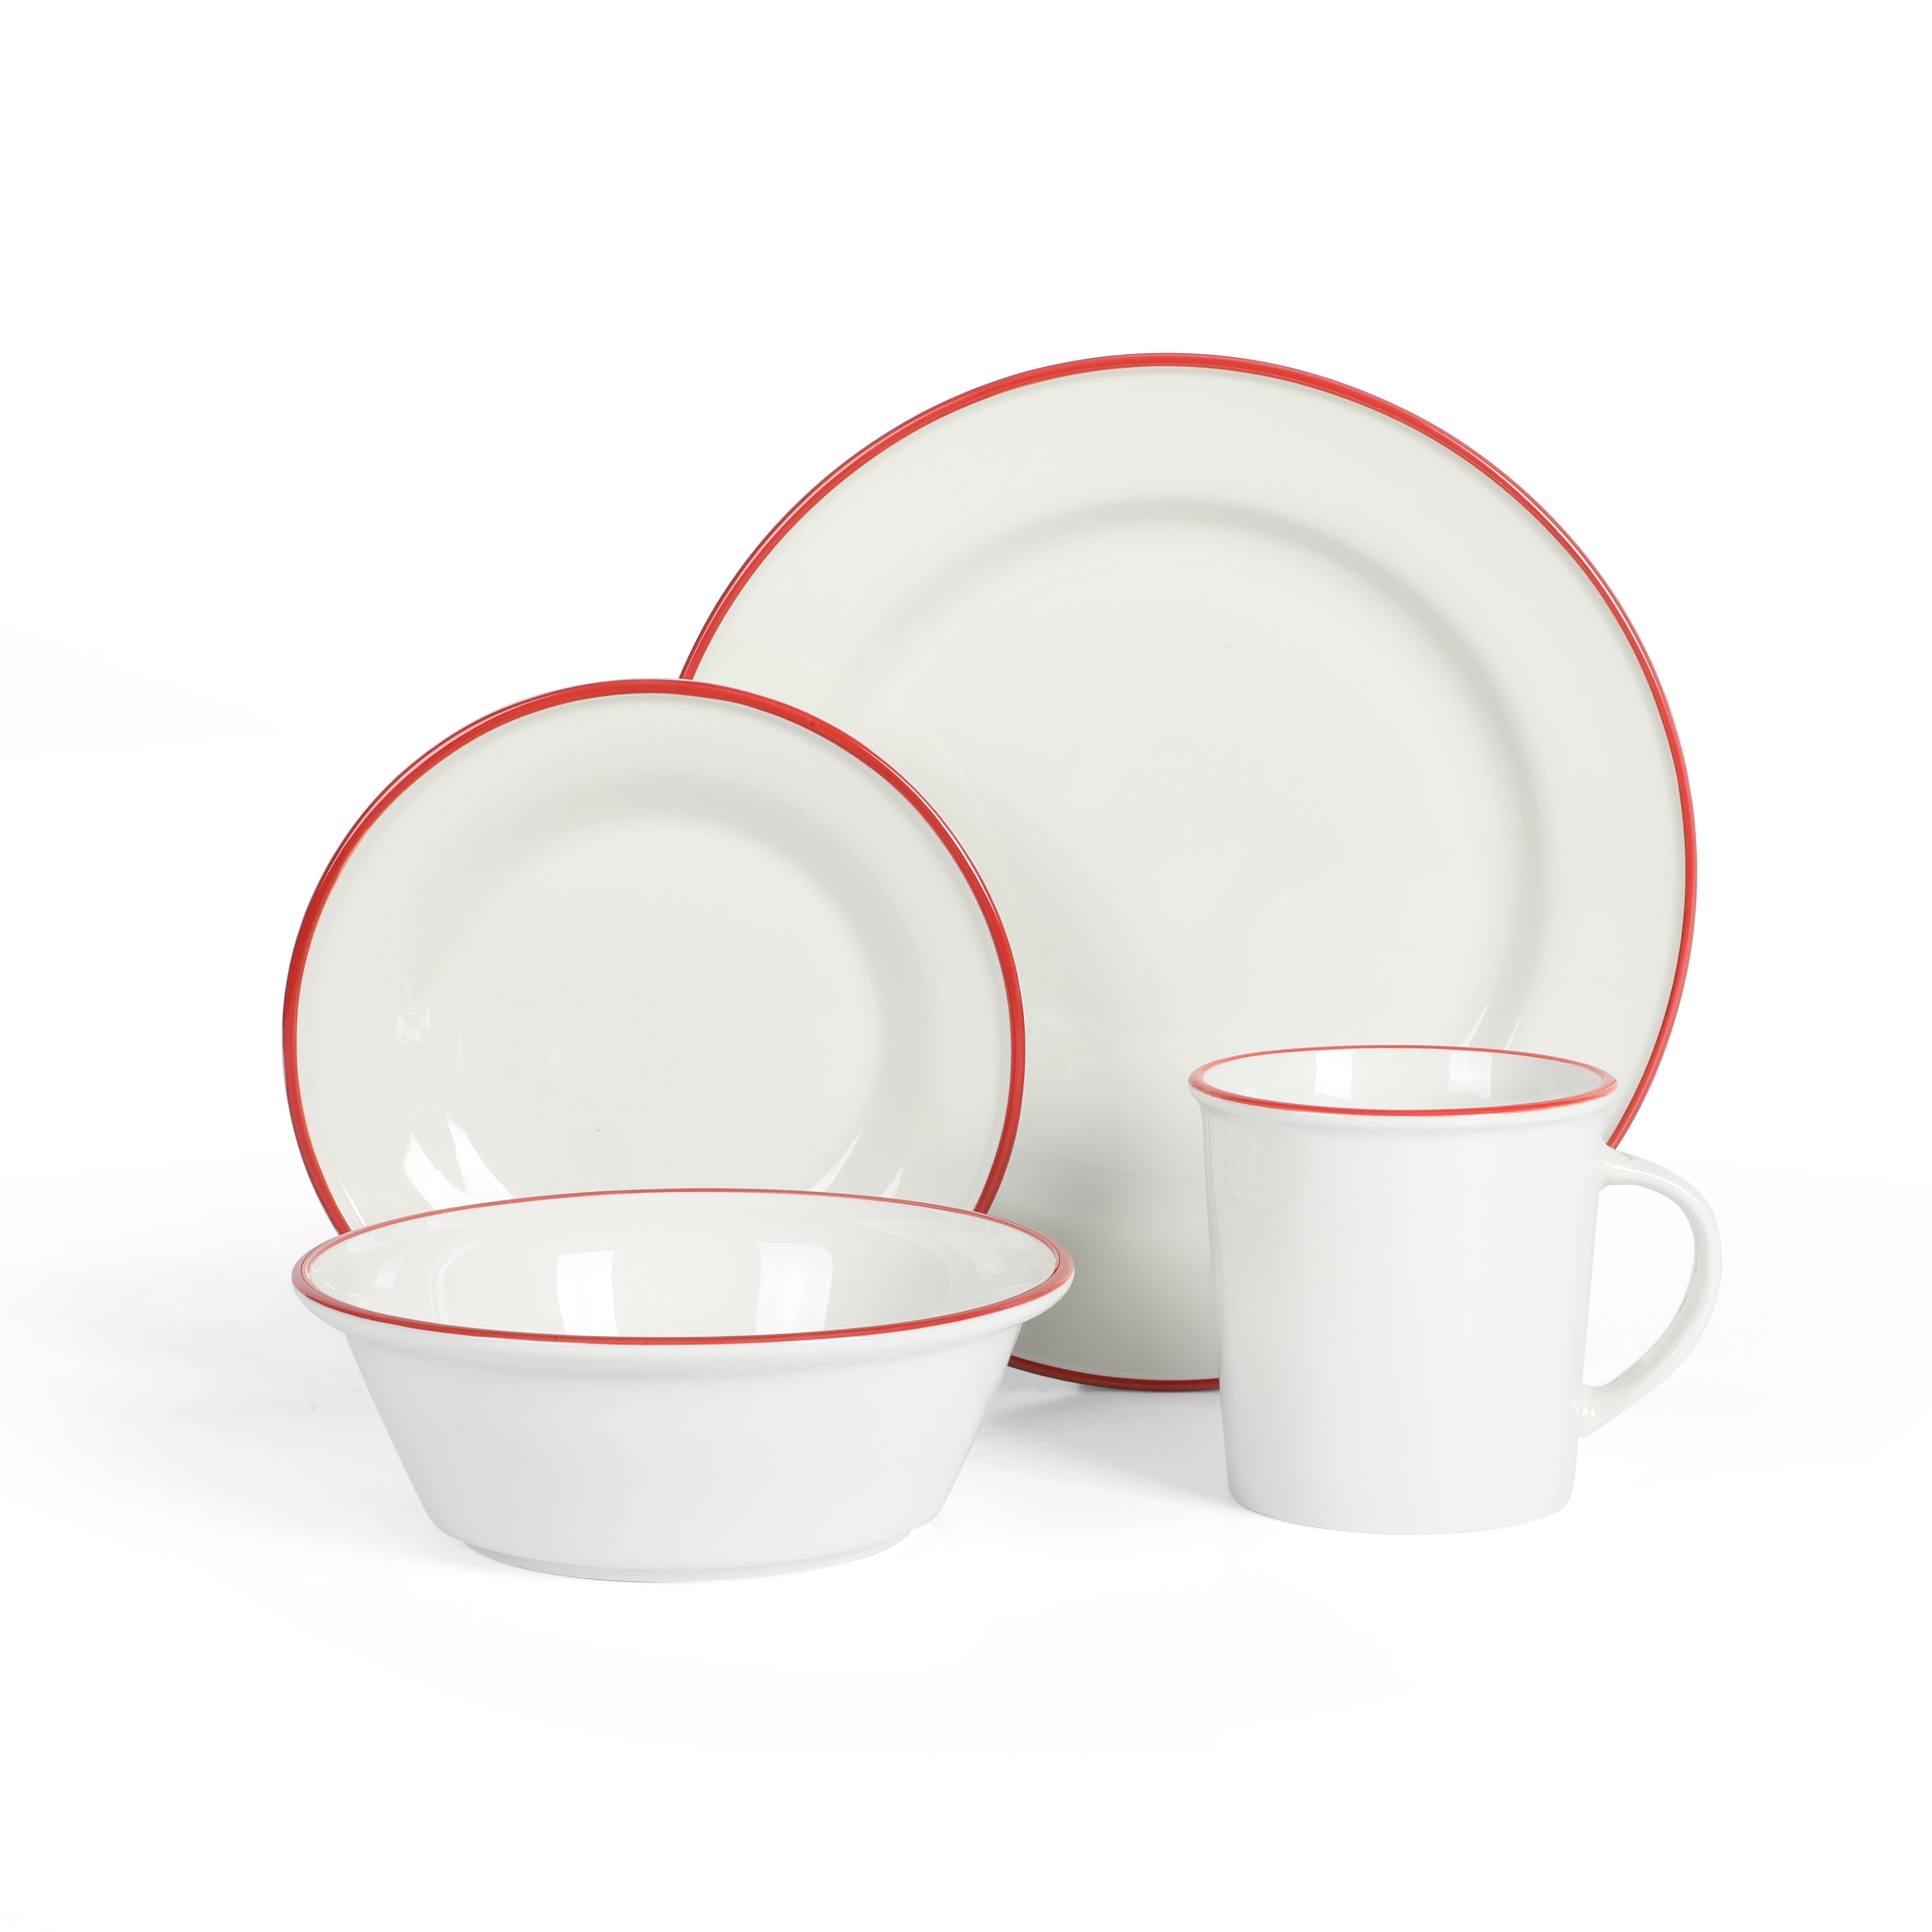 Martha Stewart Cliffield - Juego de vajilla de porcelana de 16 piezas,  color blanco con borde rojo, servicio para 4 (16 piezas)